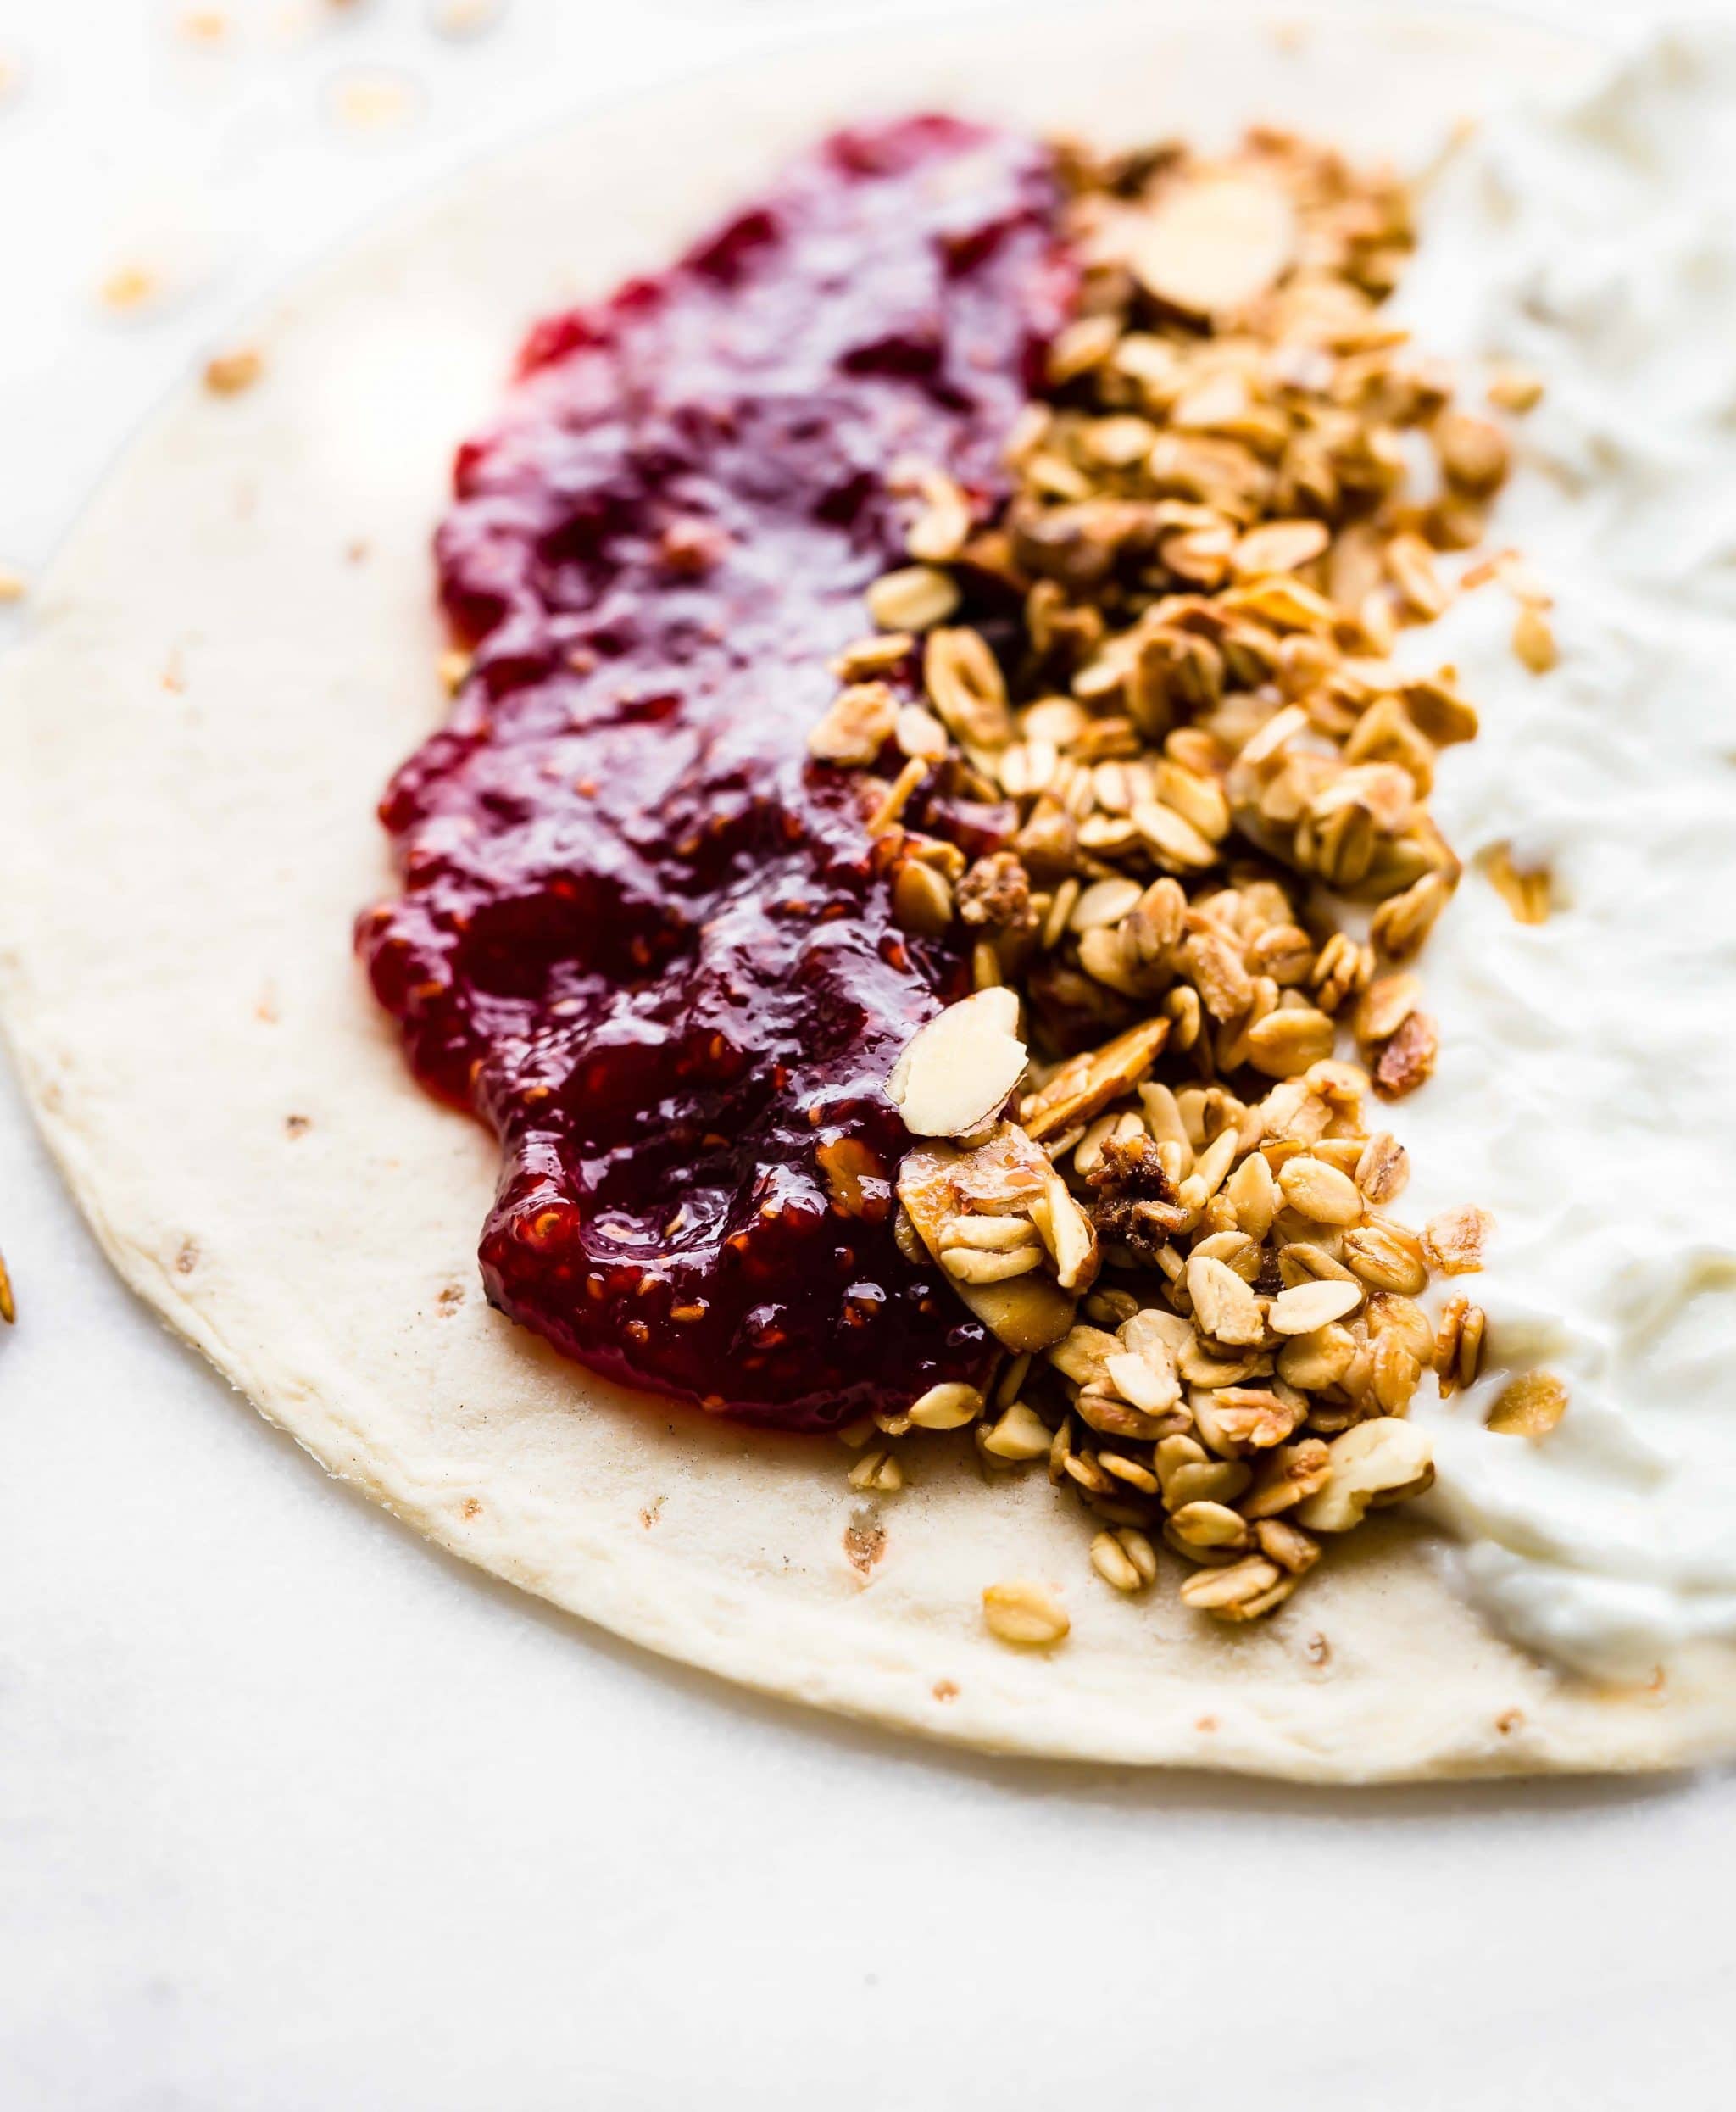 gluten free breakfast - raspberry preserves, gluten free oats and Greek yogurt spread onto a tortilla